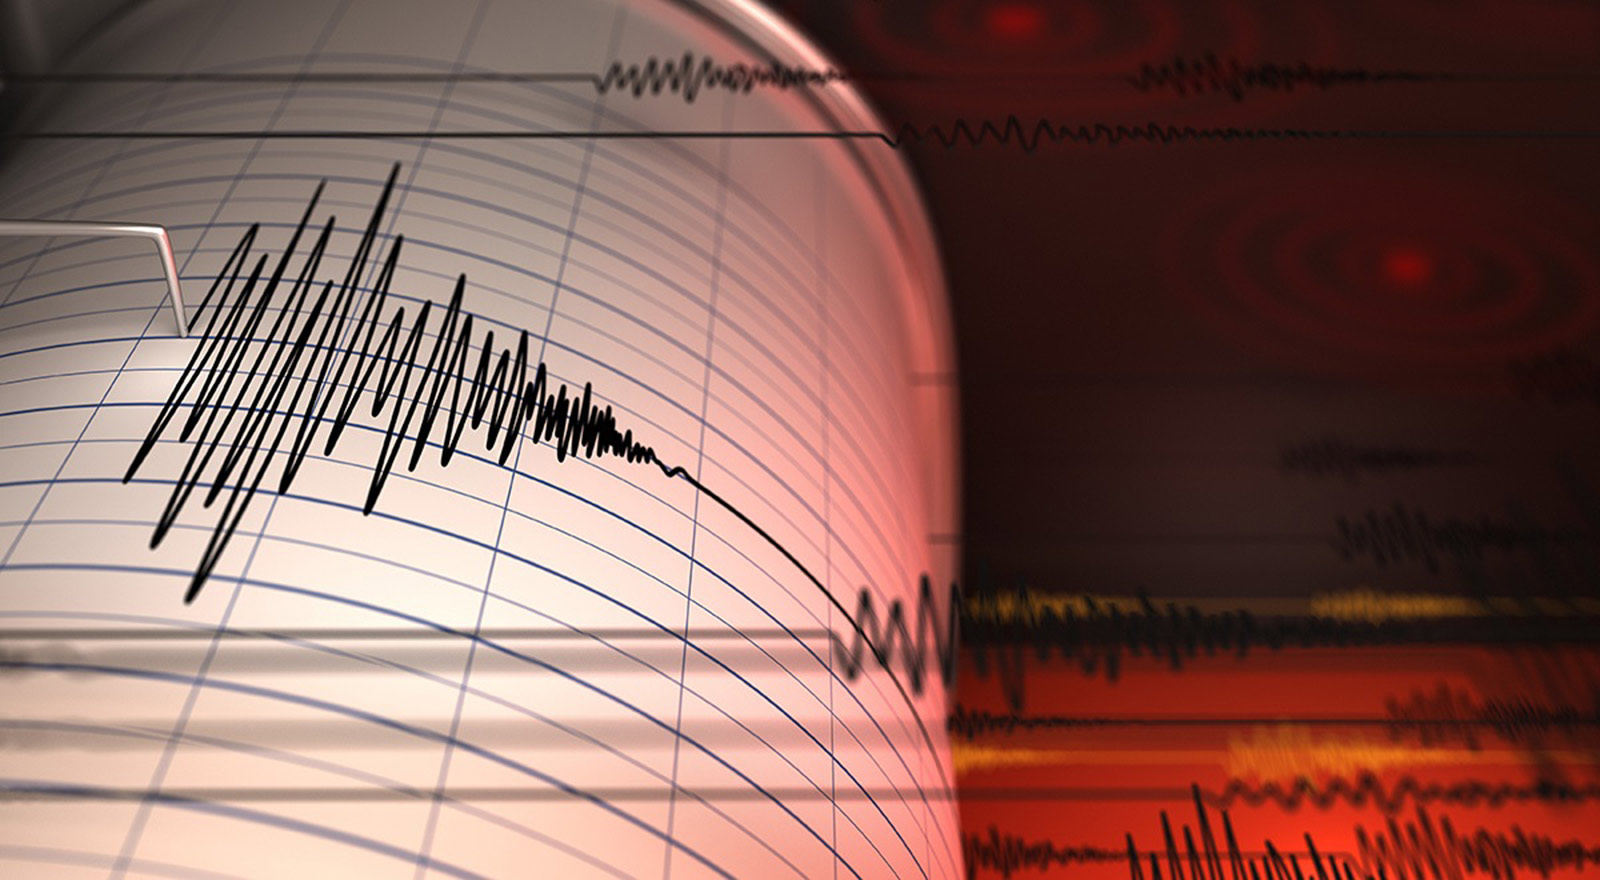 زلزال بقوة 6.4 درجات يضرب بين المكسيك وغواتيمالا